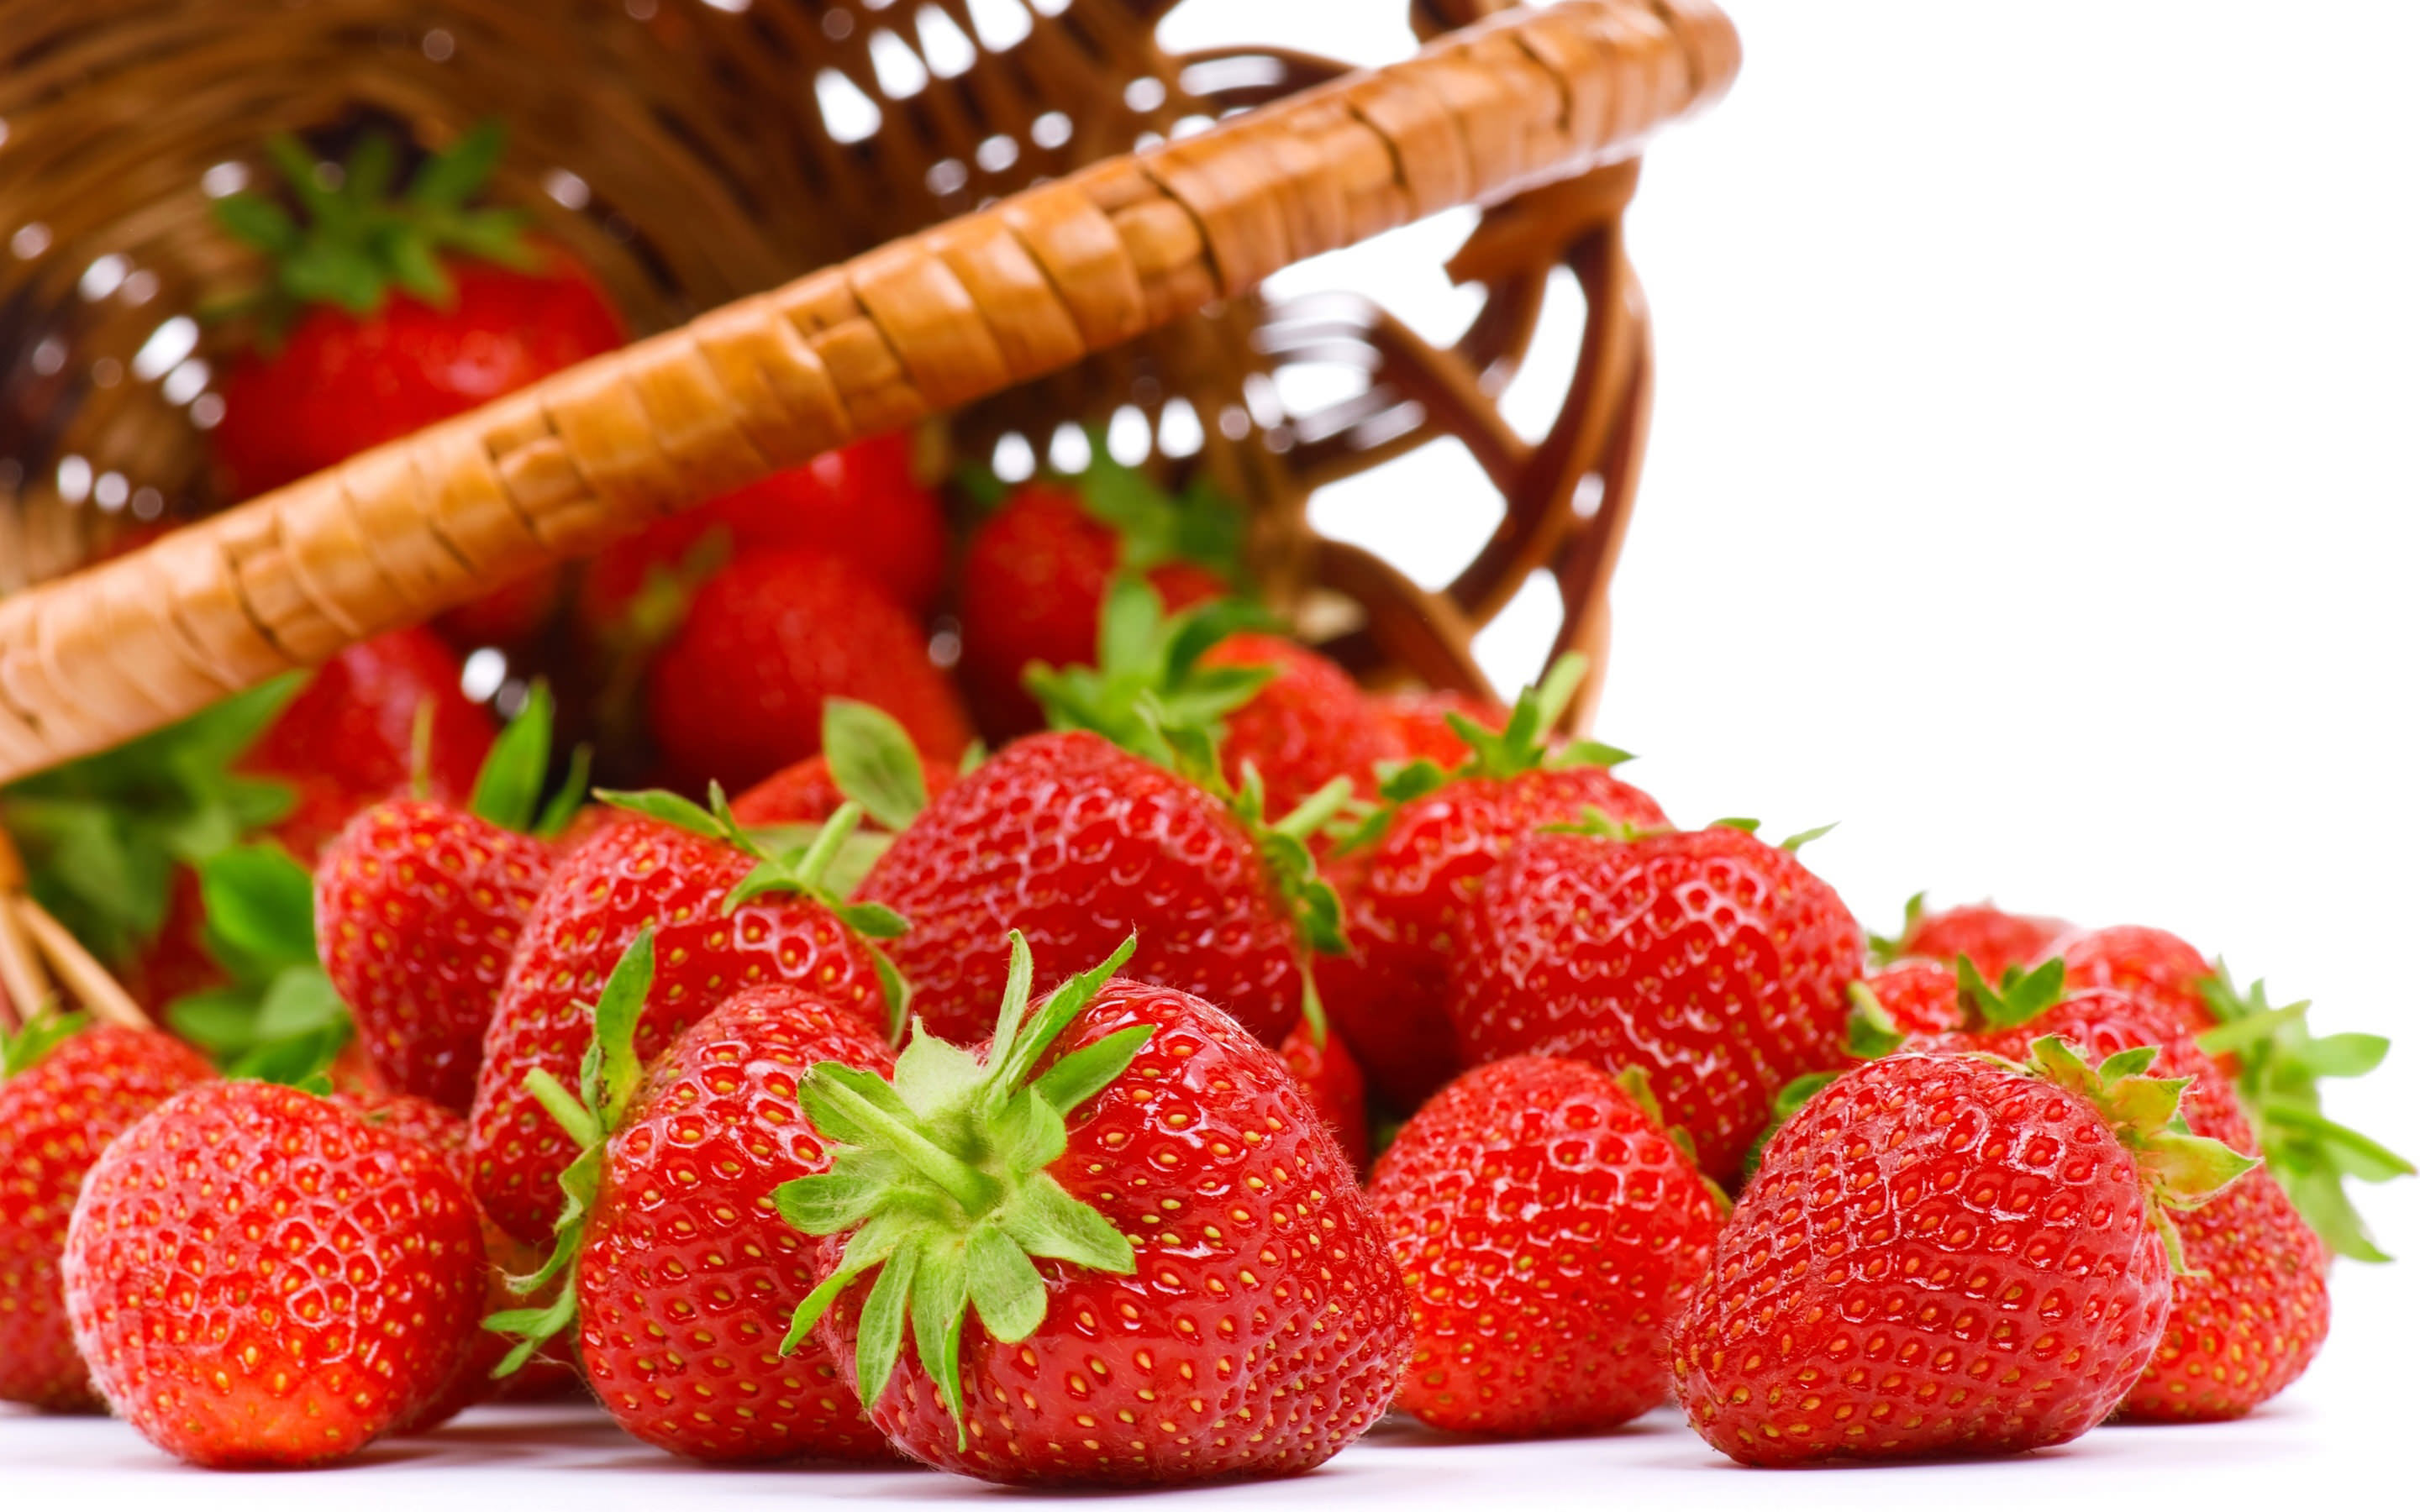 درآمد 184 میلیون ریالی از صادرات توت فرنگی